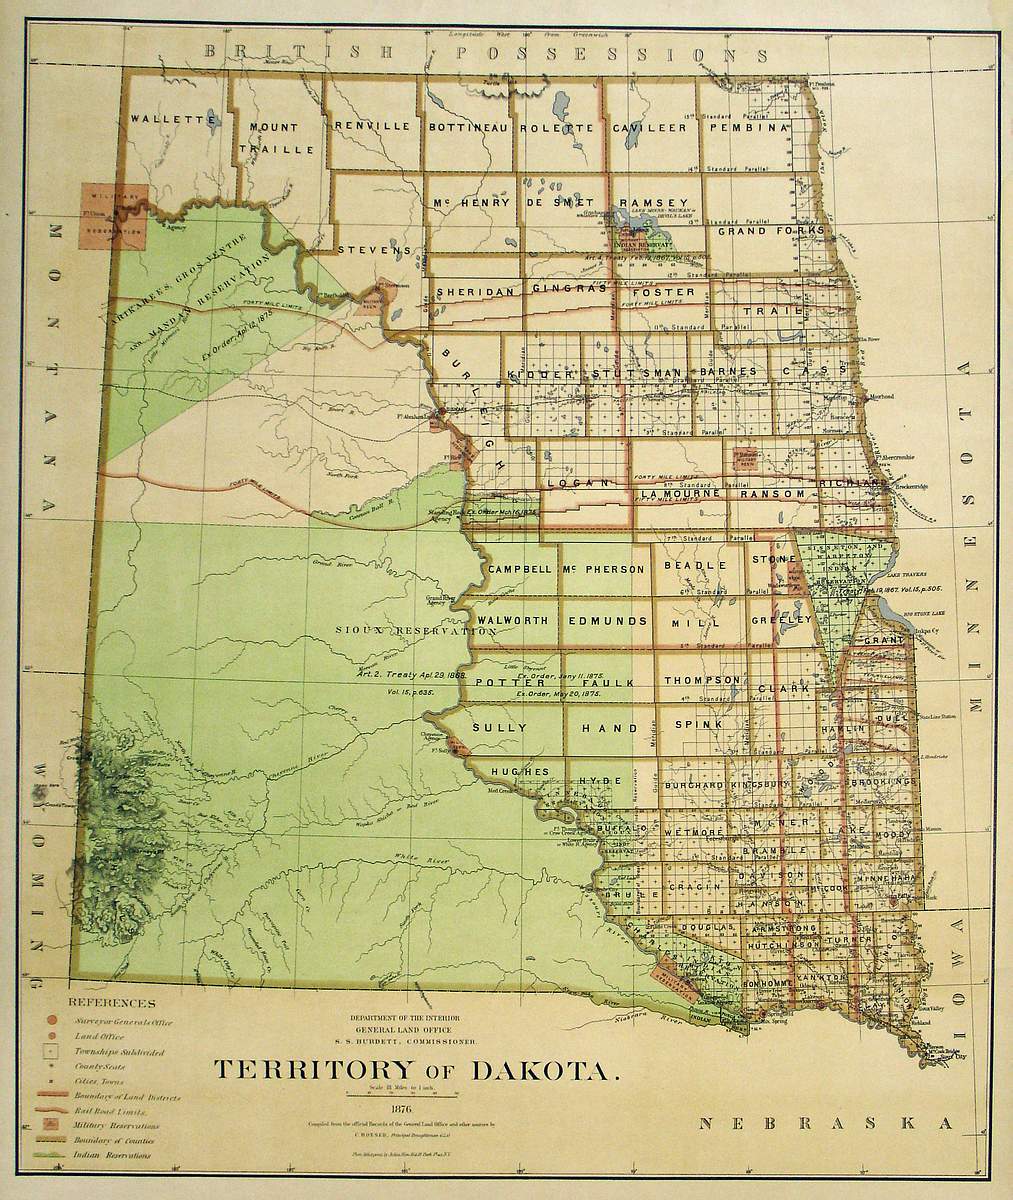 (Dakotas) Territory of Dakota